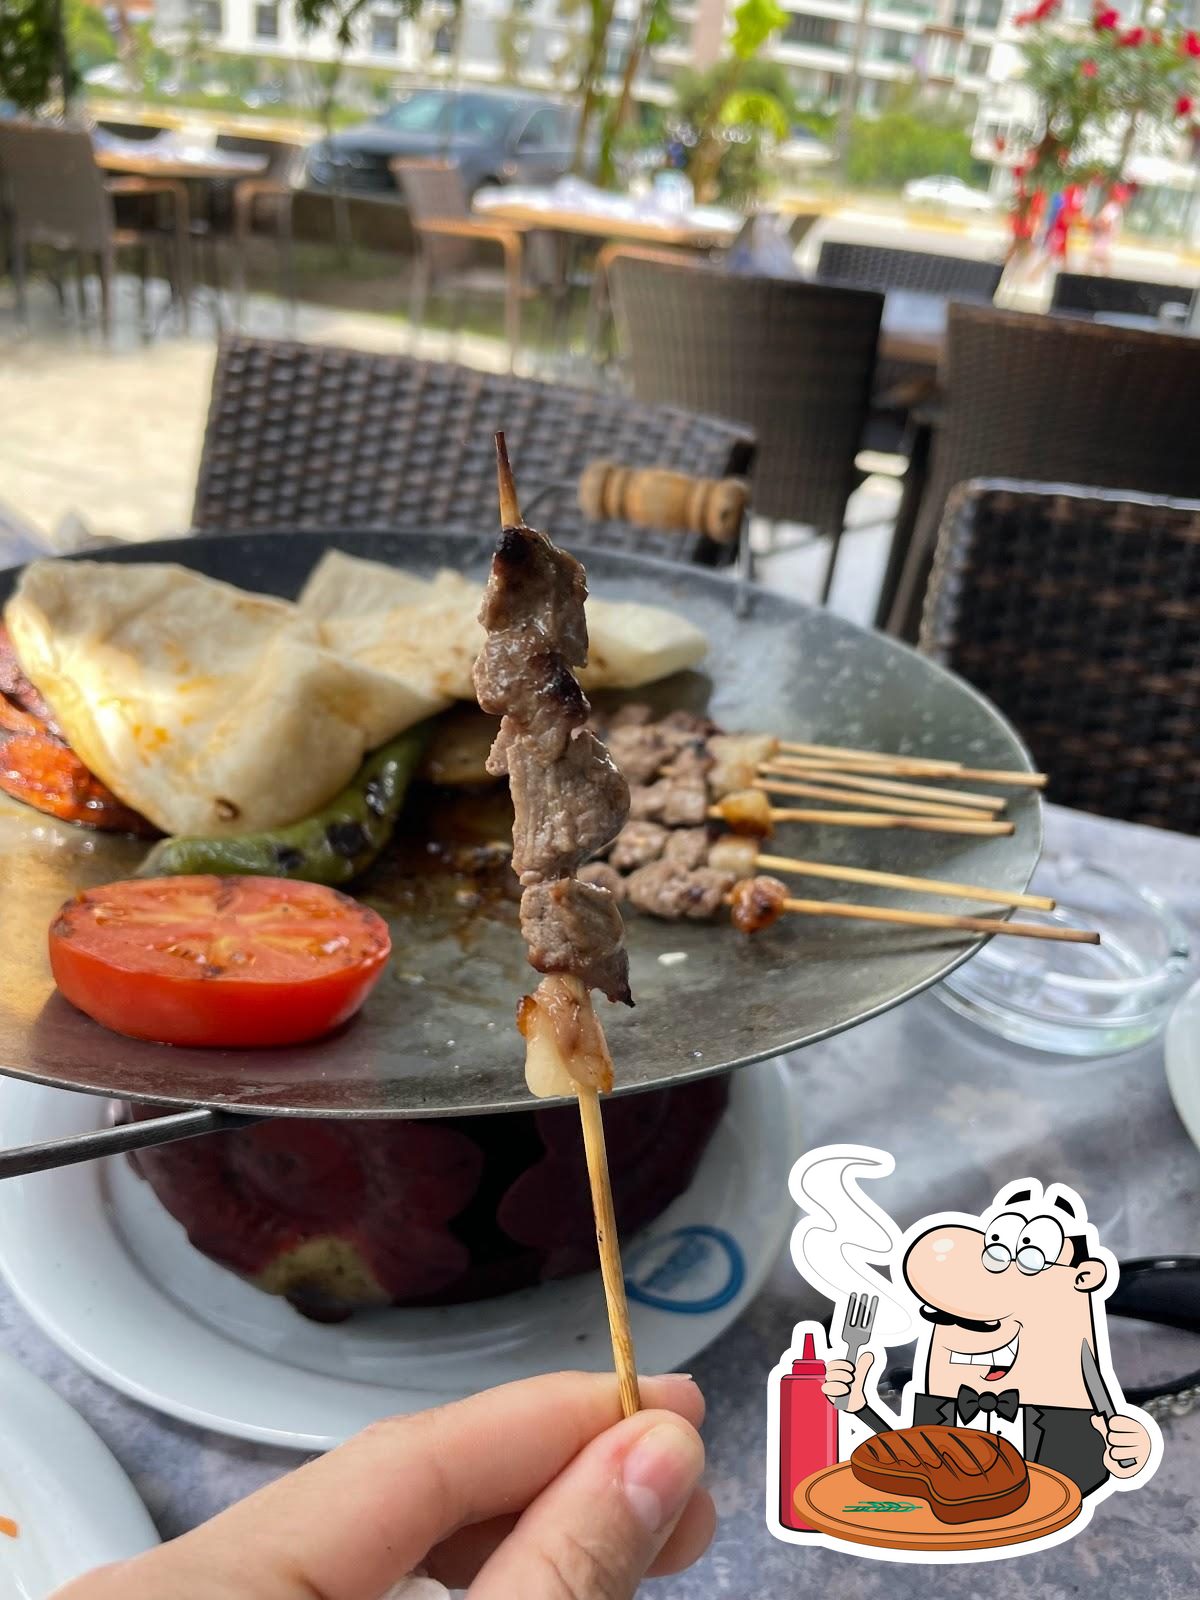 GÜLTEN ATAR ORTAKLAR ÇÖP ŞİŞ, Antalya - Restaurant reviews